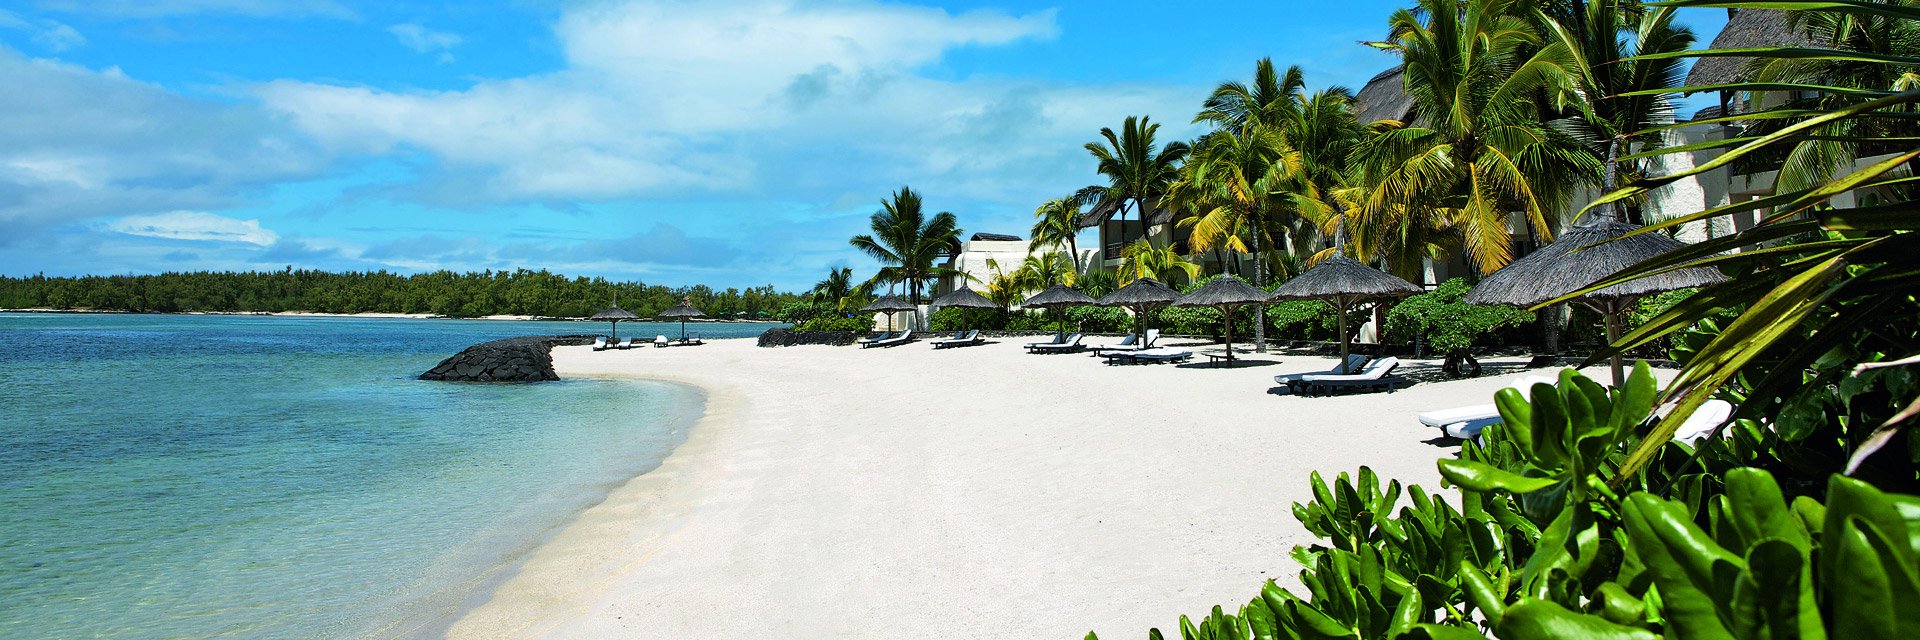 Paradise Beach by Horizon Holidays 4* (Маврикий, Маврикий) - цены, отзывы, фото, бронирование - ПАКС